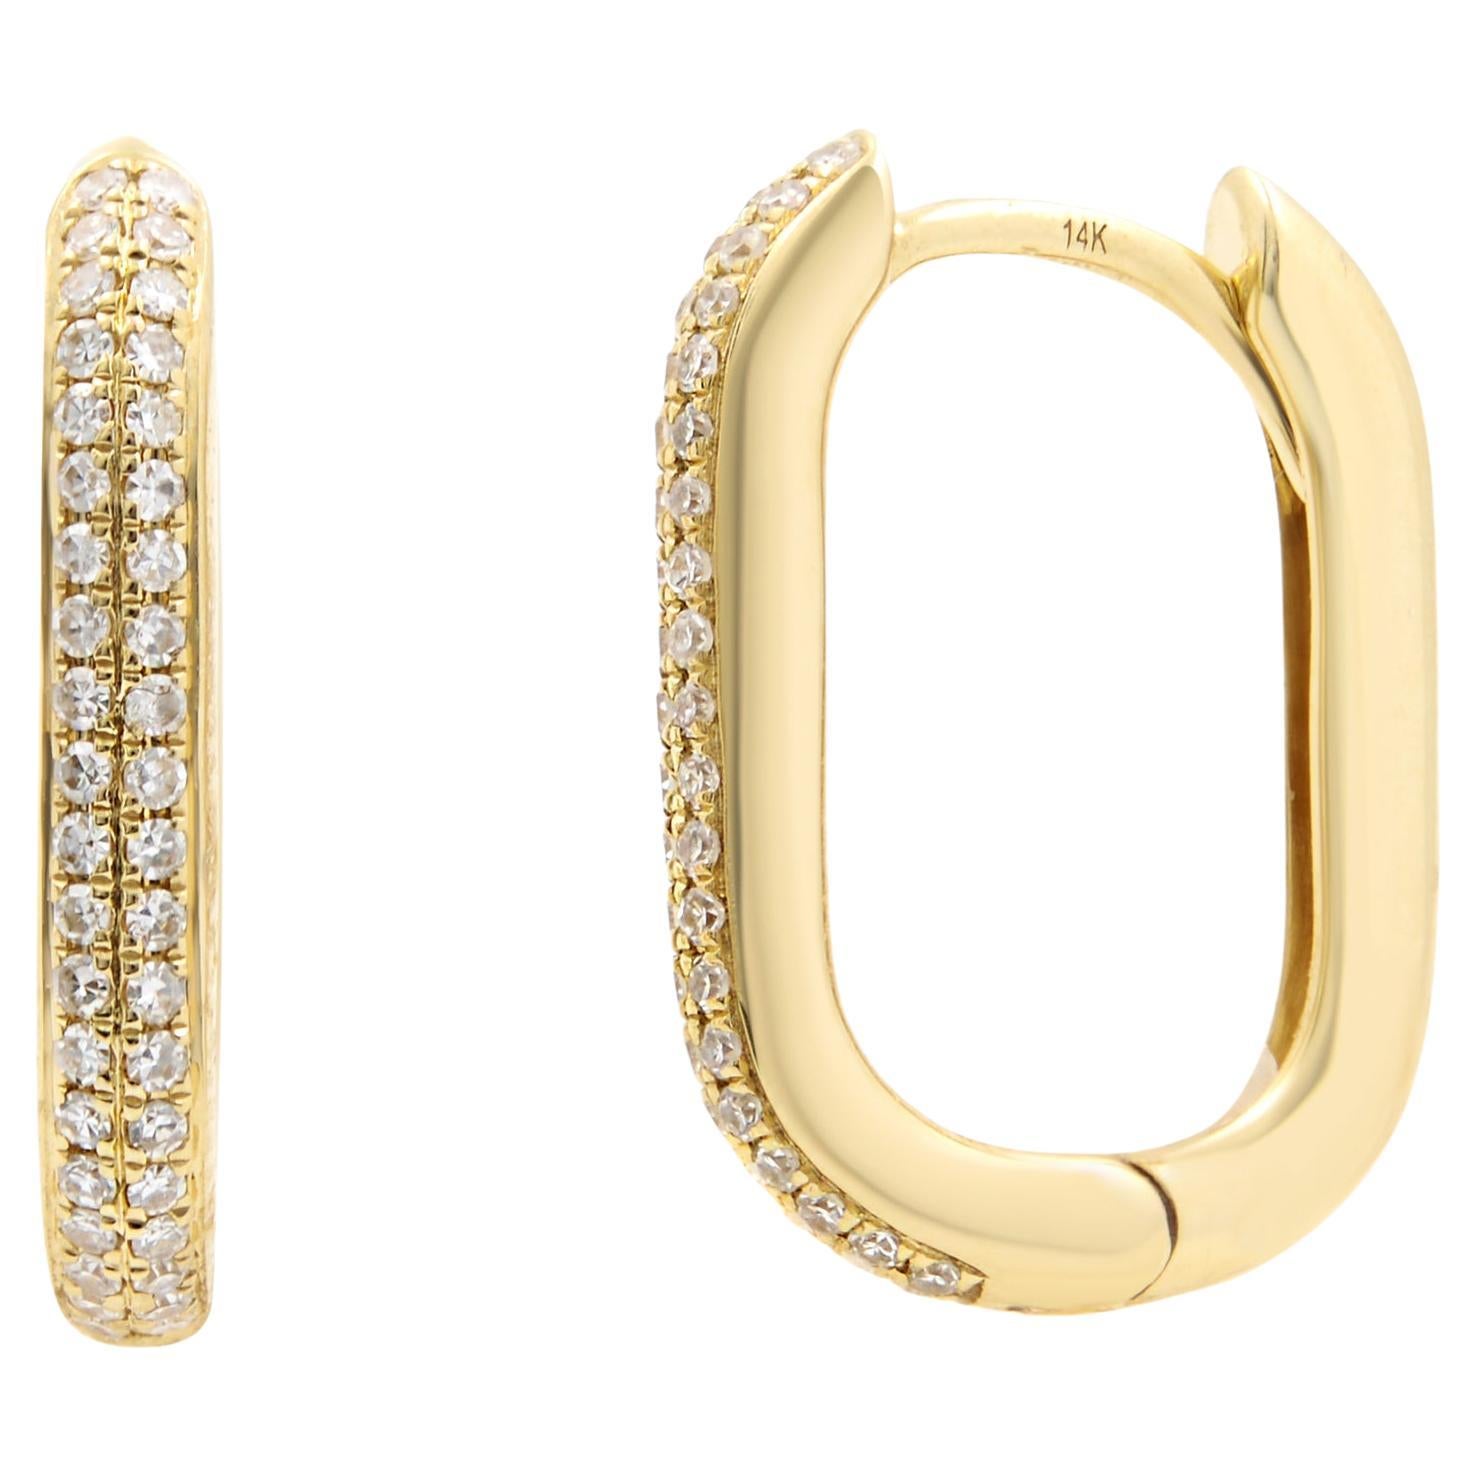 Rachel Koen Diamond Oblong Huggie Earrings 14K Yellow Gold 0.18Cttw